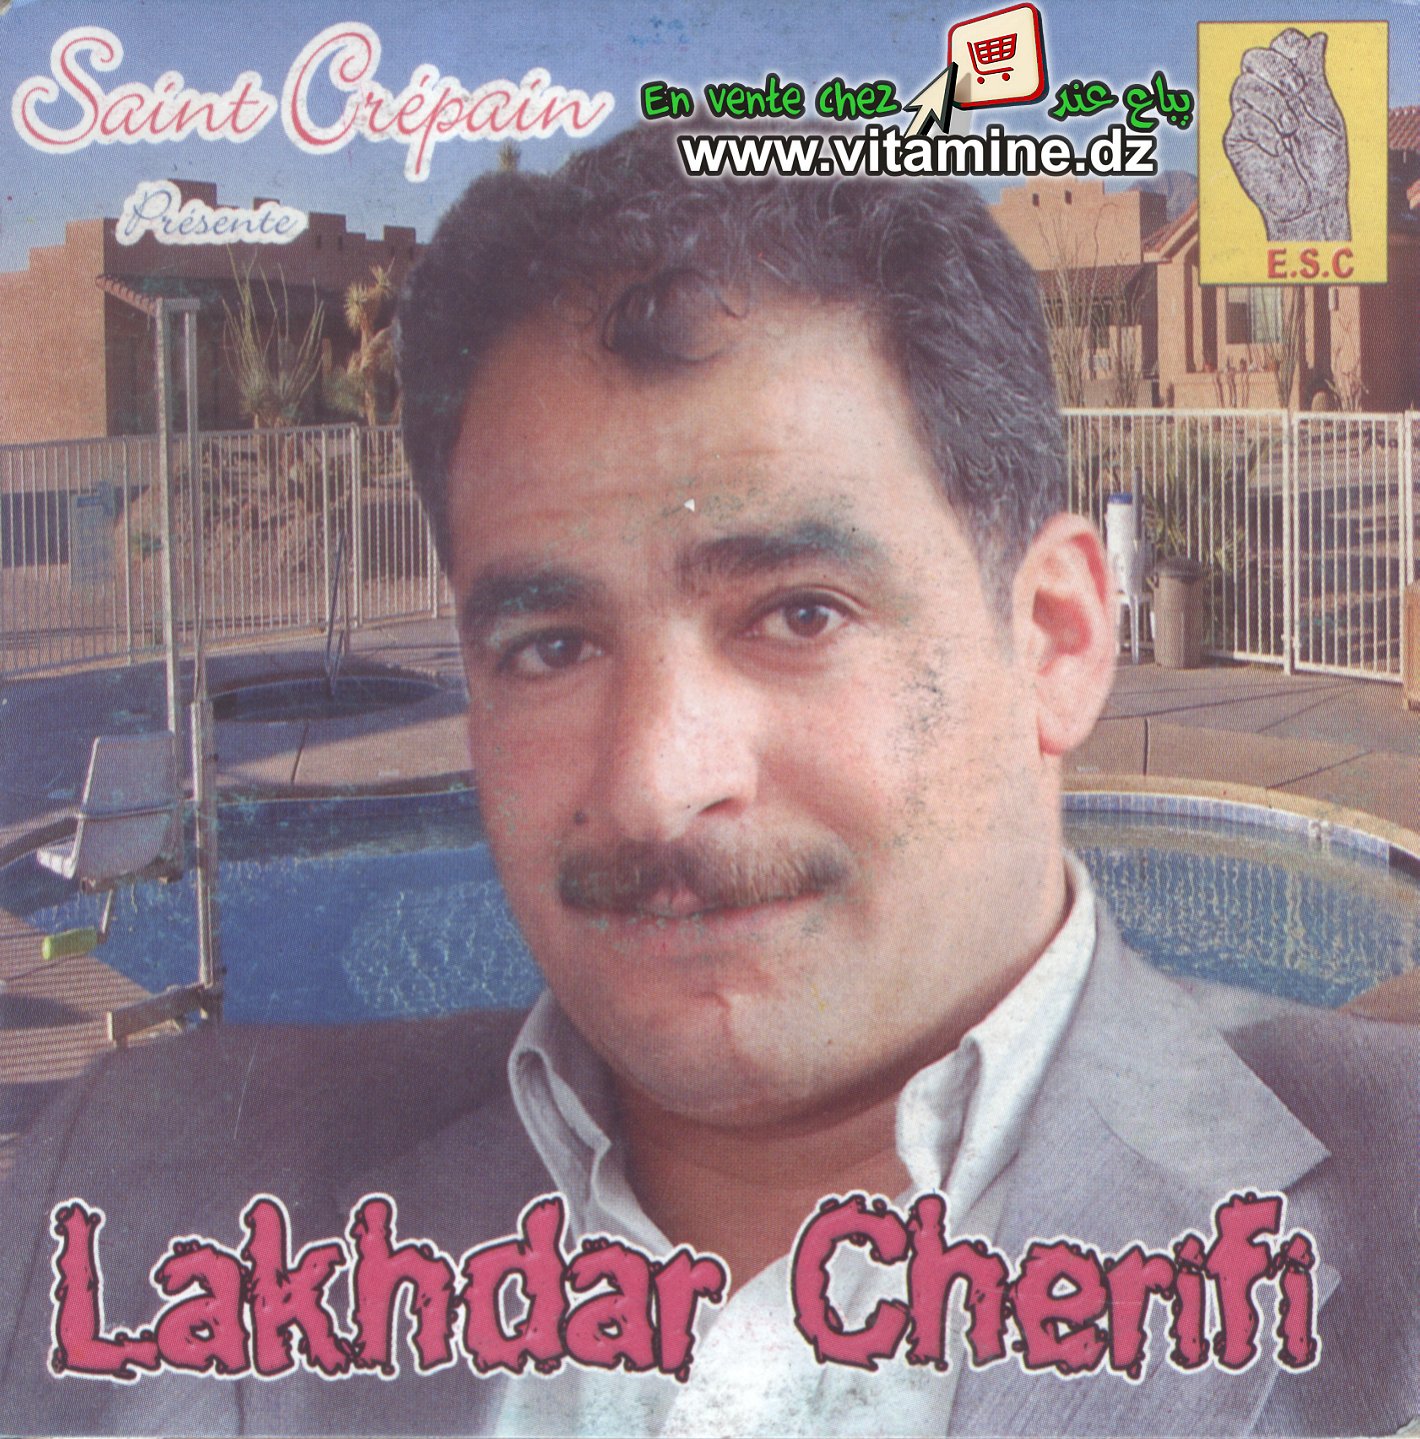 Lakhdar Cherifi